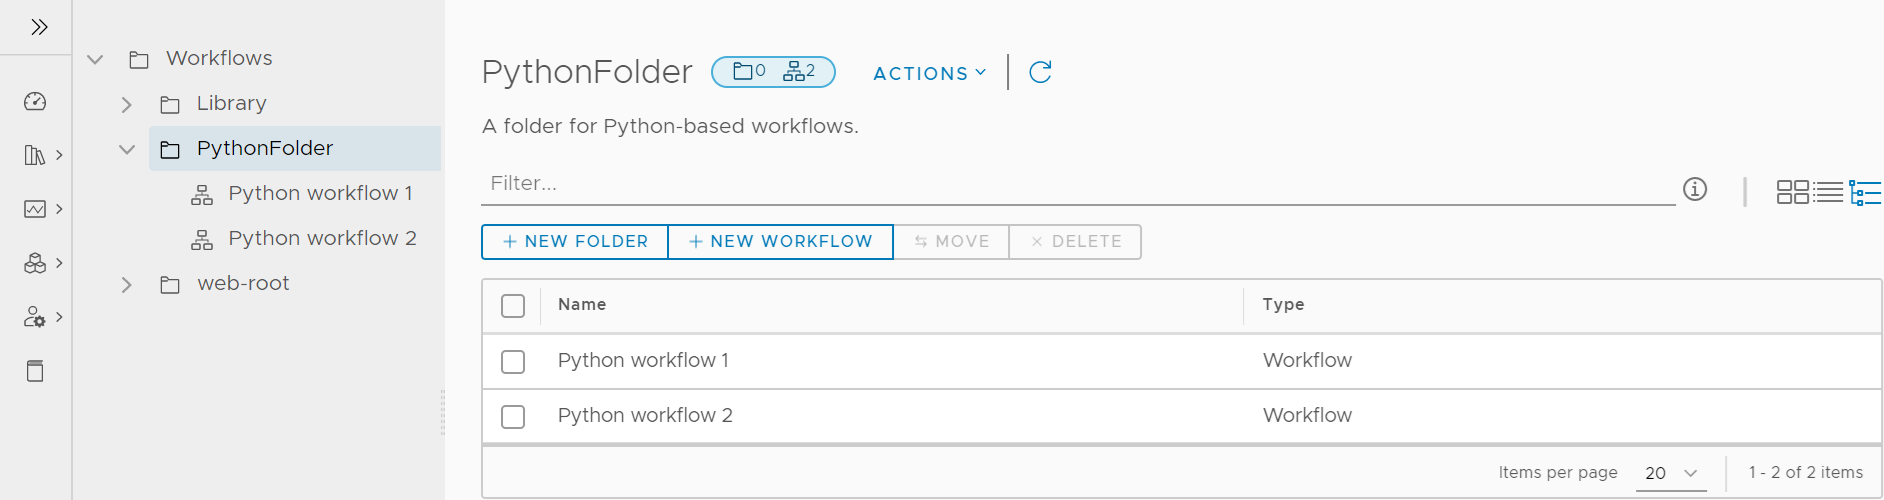 vRealize Orchestrator Client affiche la page Workflows dans l'affichage d'arborescence.